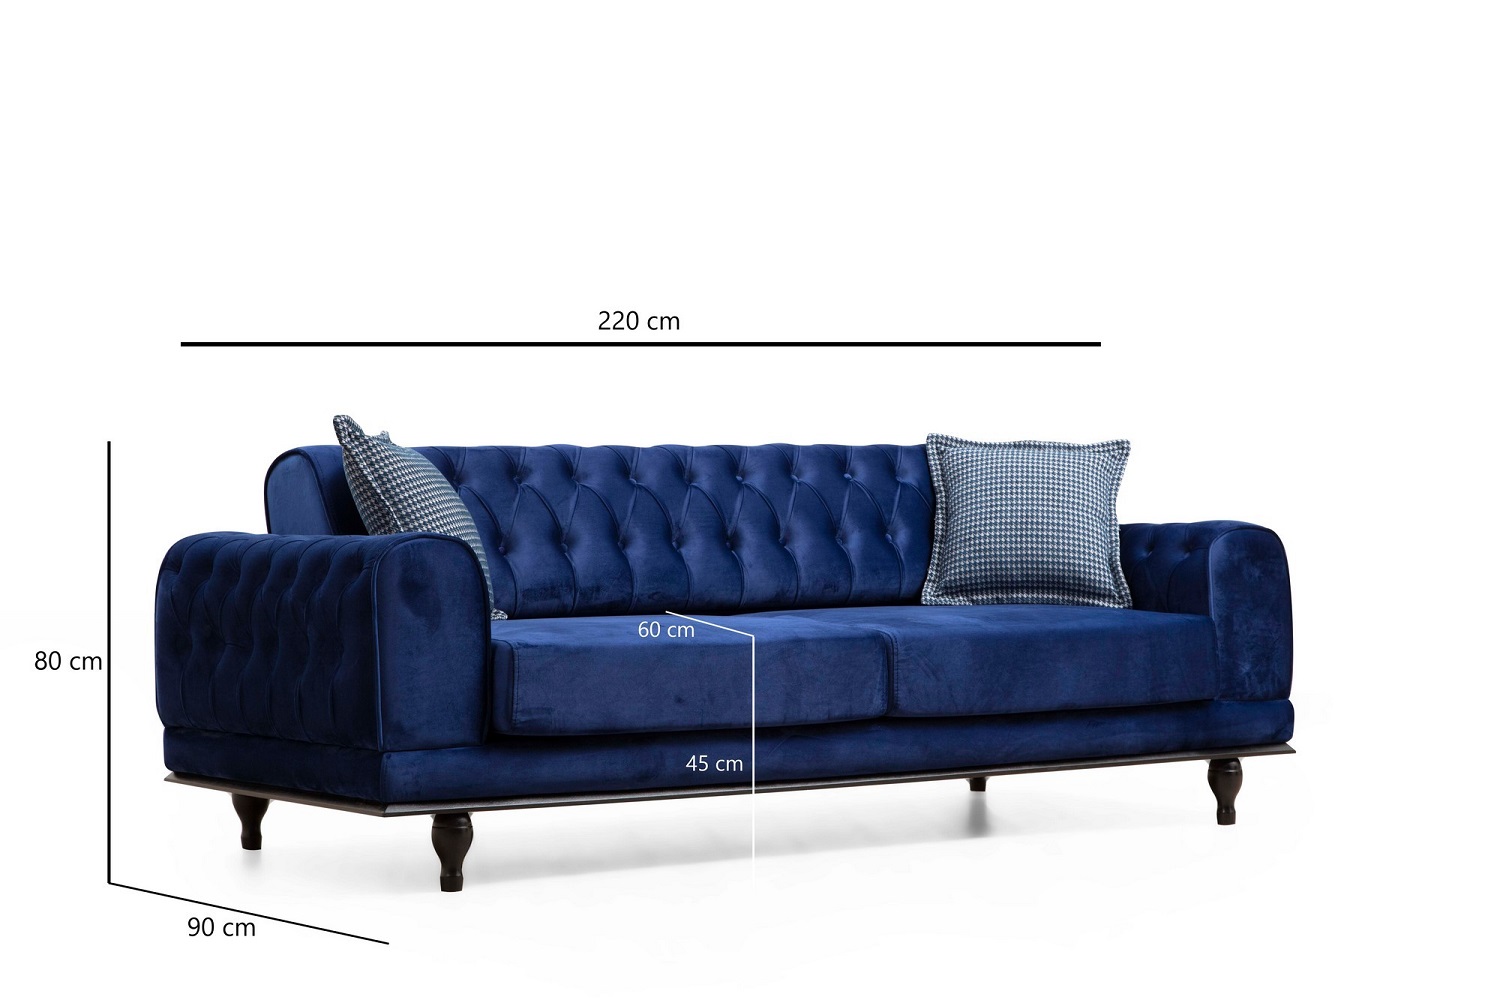 dizajnova-rozkladacia-sedacka-rococo-220-cm-kralovska-modra-7